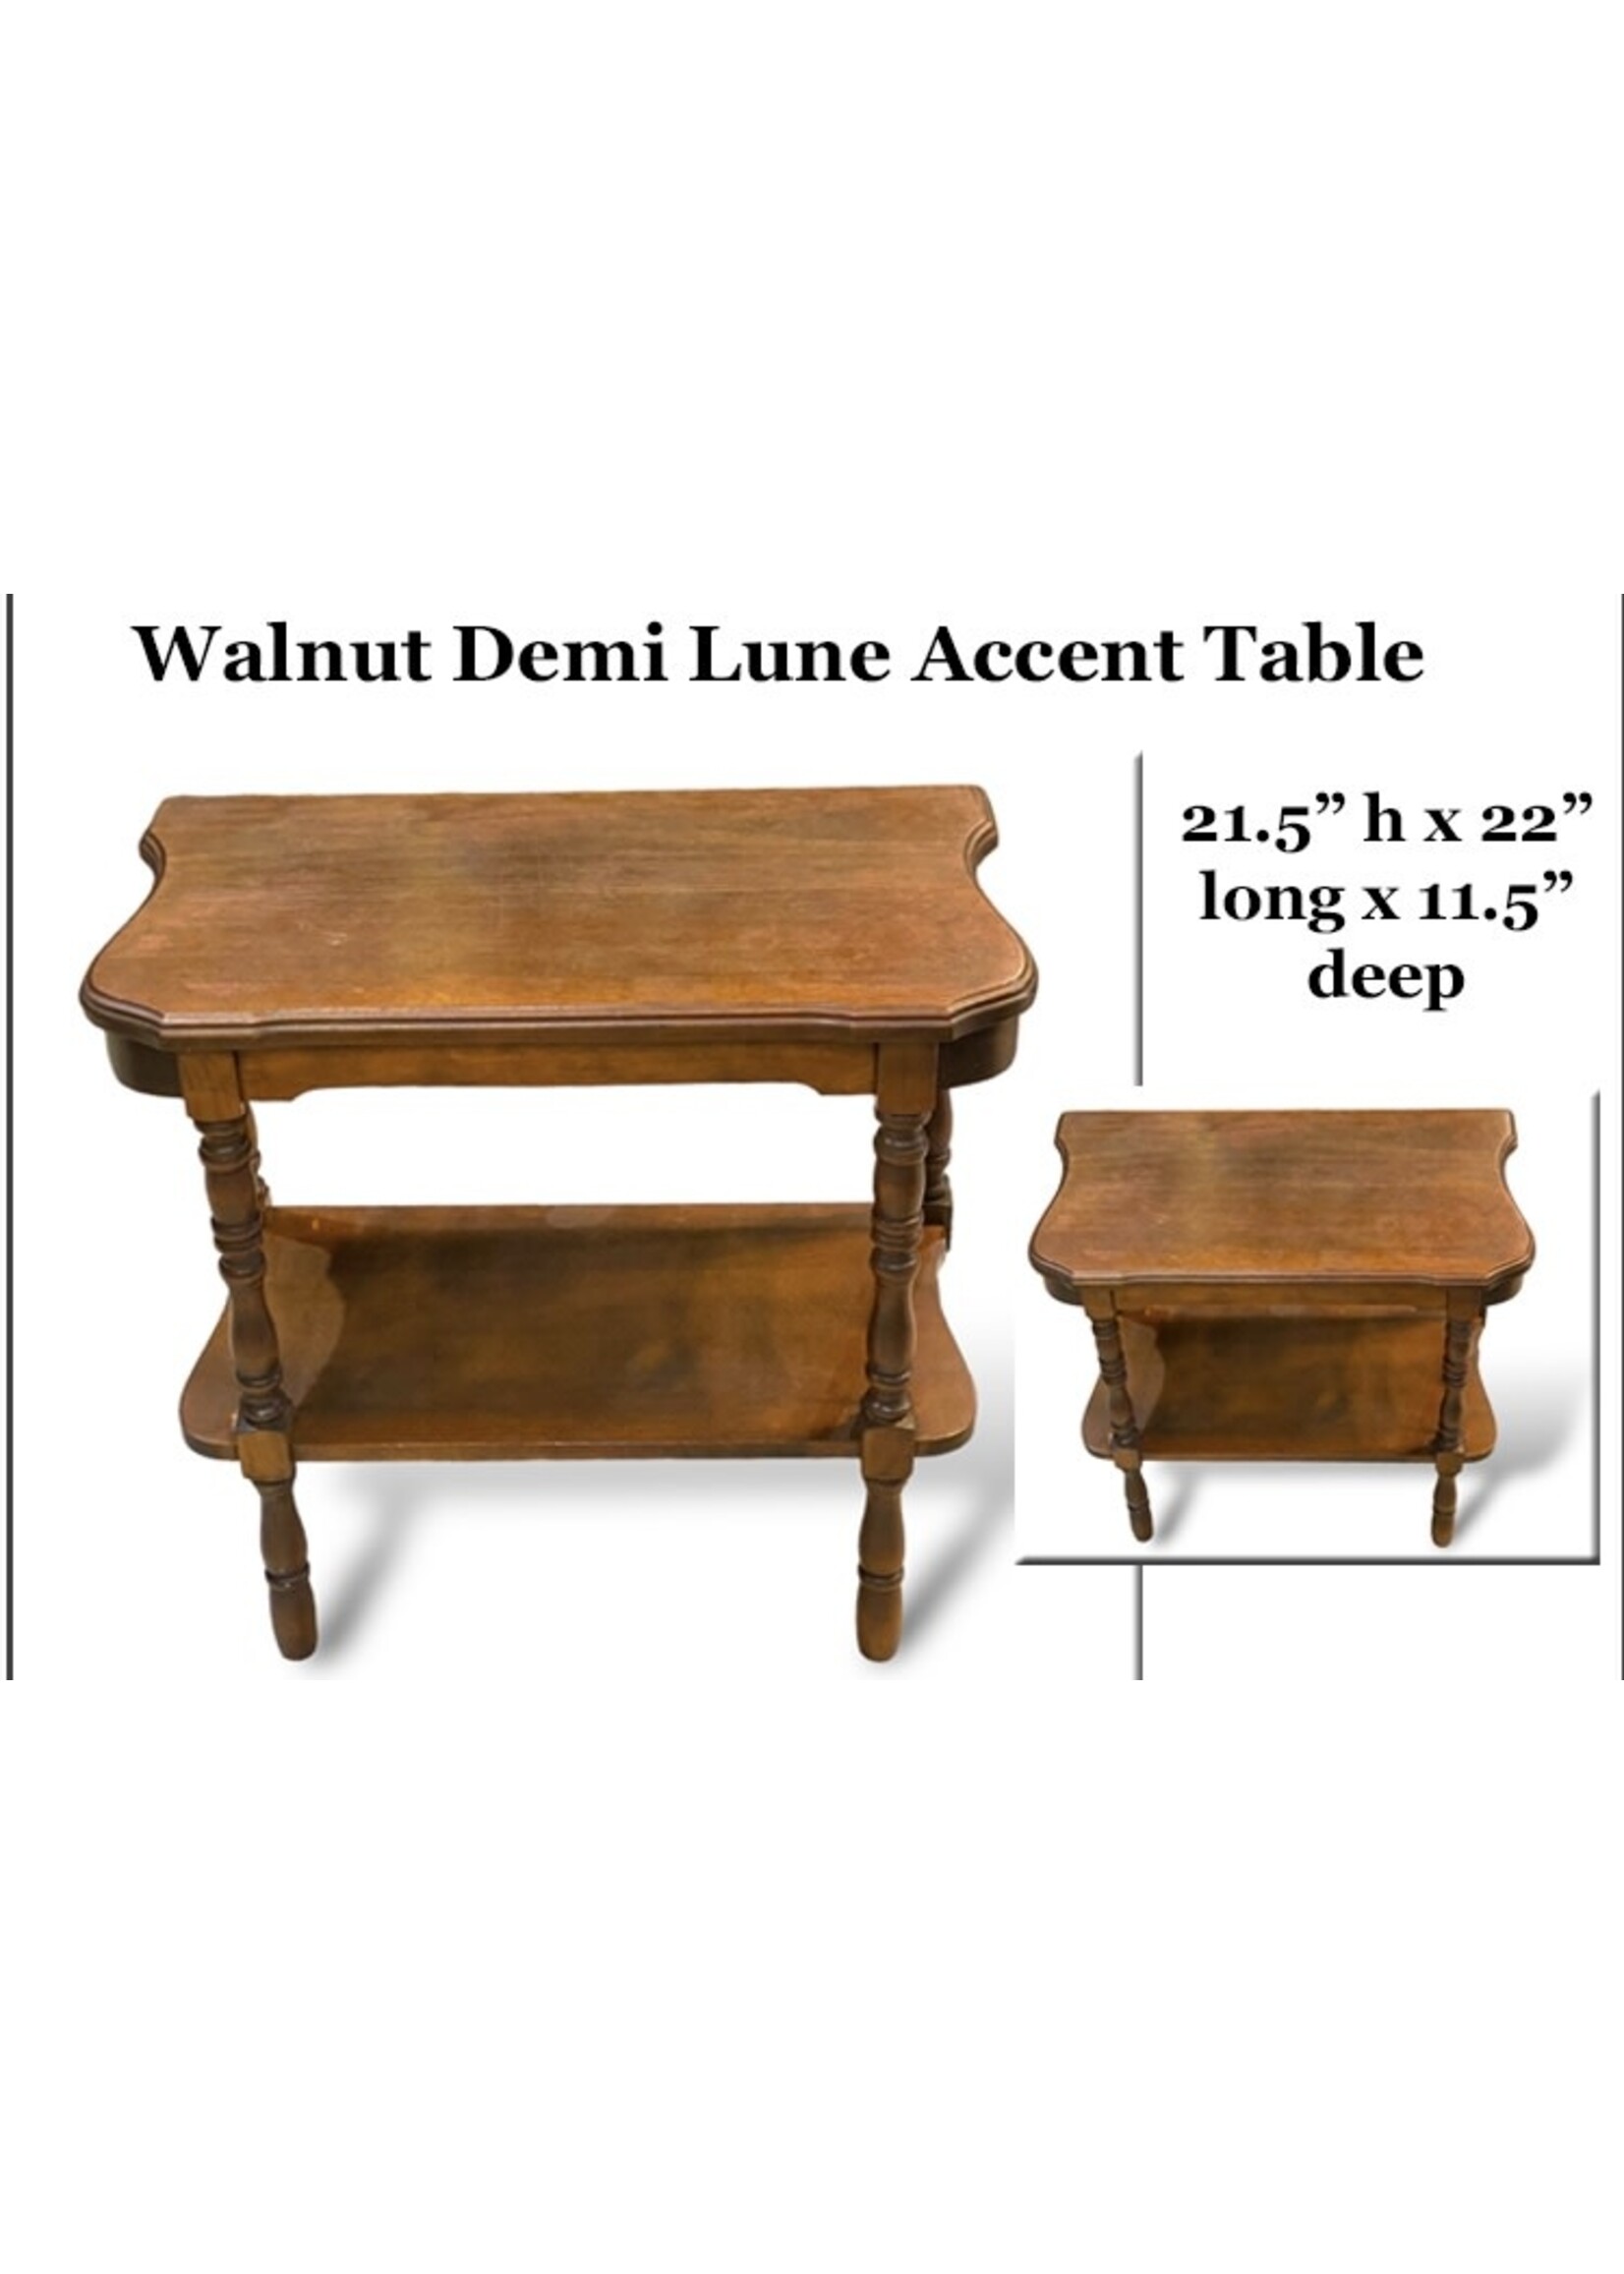 Walnut Demi Lune Accent Table - 21.5” H x 22”L x 11.5D